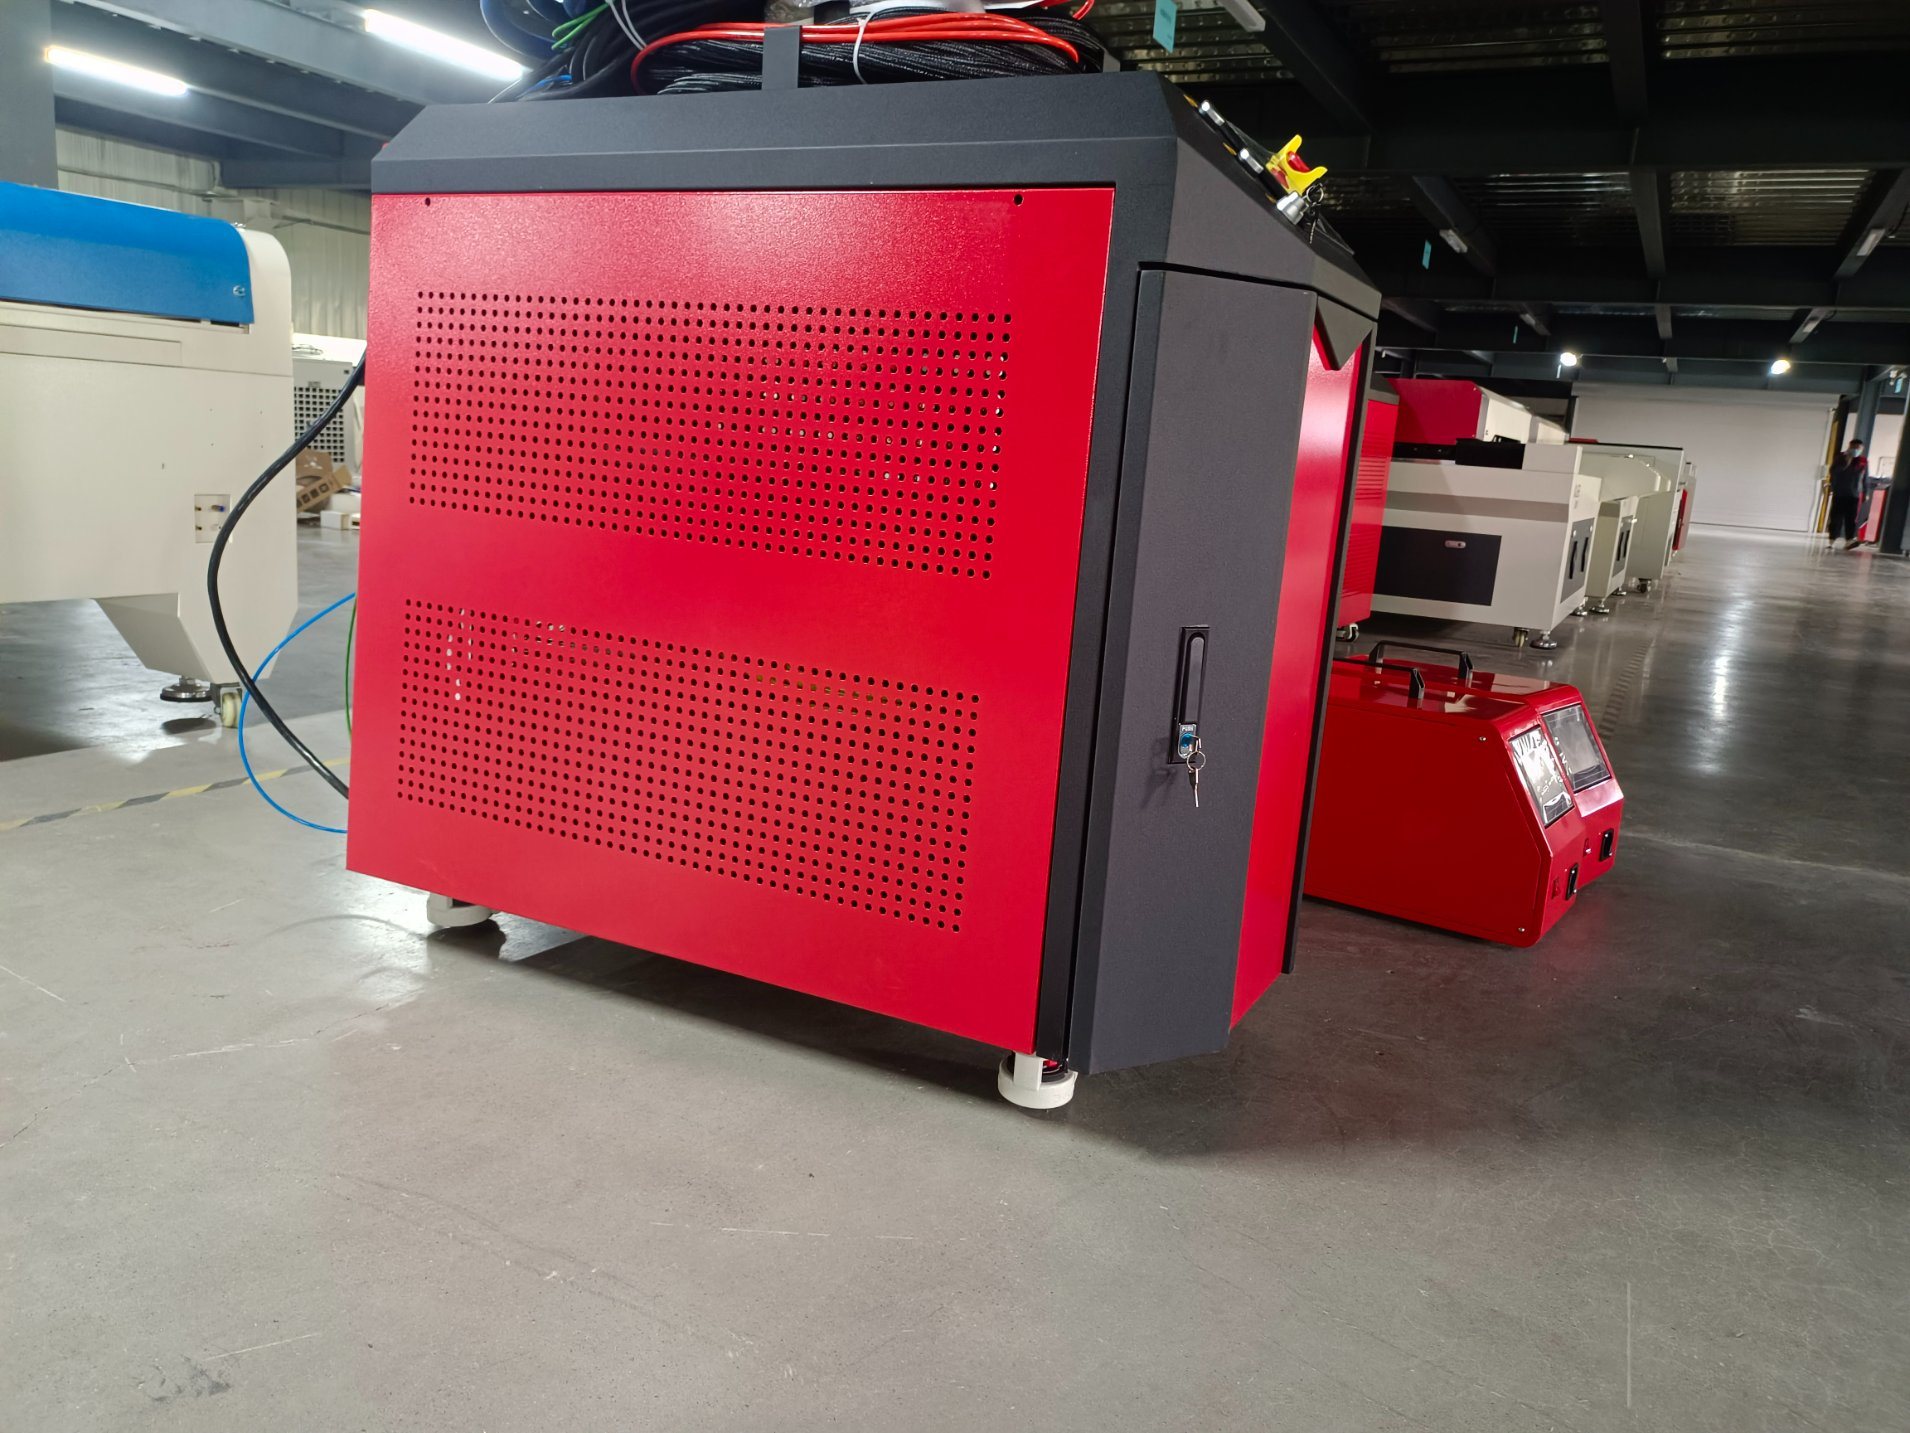 Օպտիկամանրաթելային լազերային եռակցման մեքենա, որը նախատեսված է տրանսֆորմատորների մշակման համար